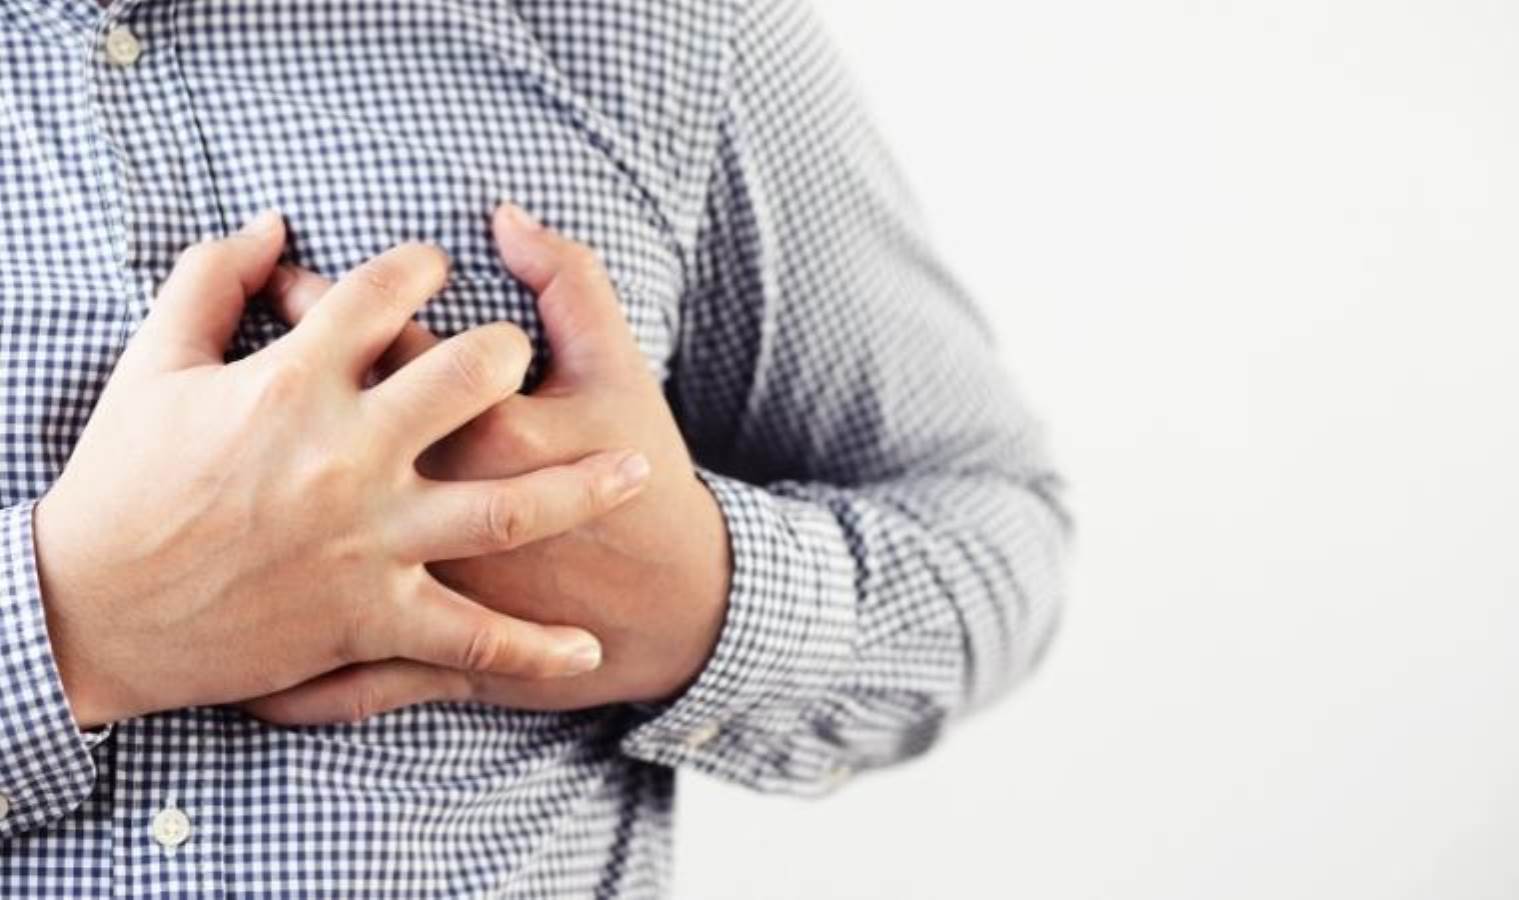 'Kalp hastalıklarının gençlerde görülme sıklığı arttı' uyarısı